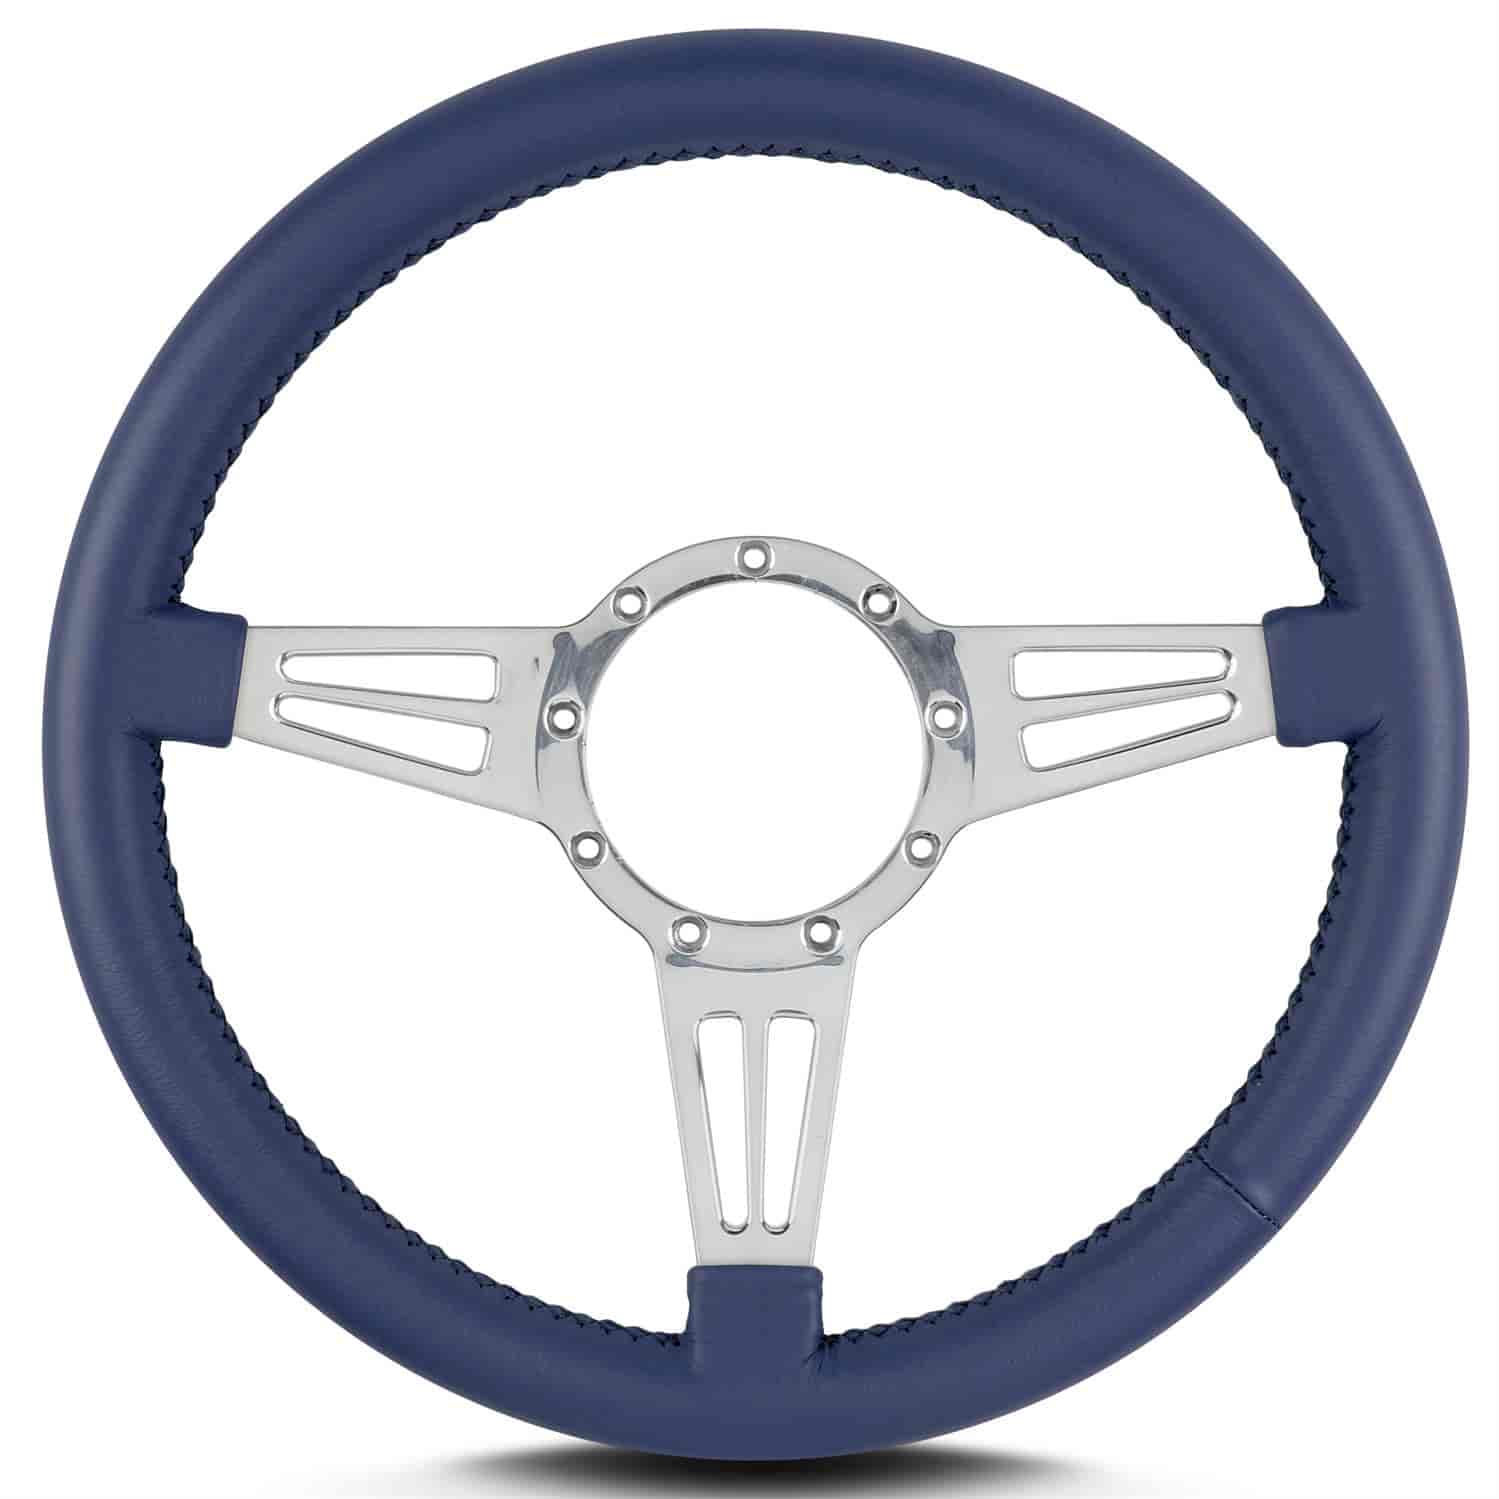 MK-4 Steering Wheel 14" diameter